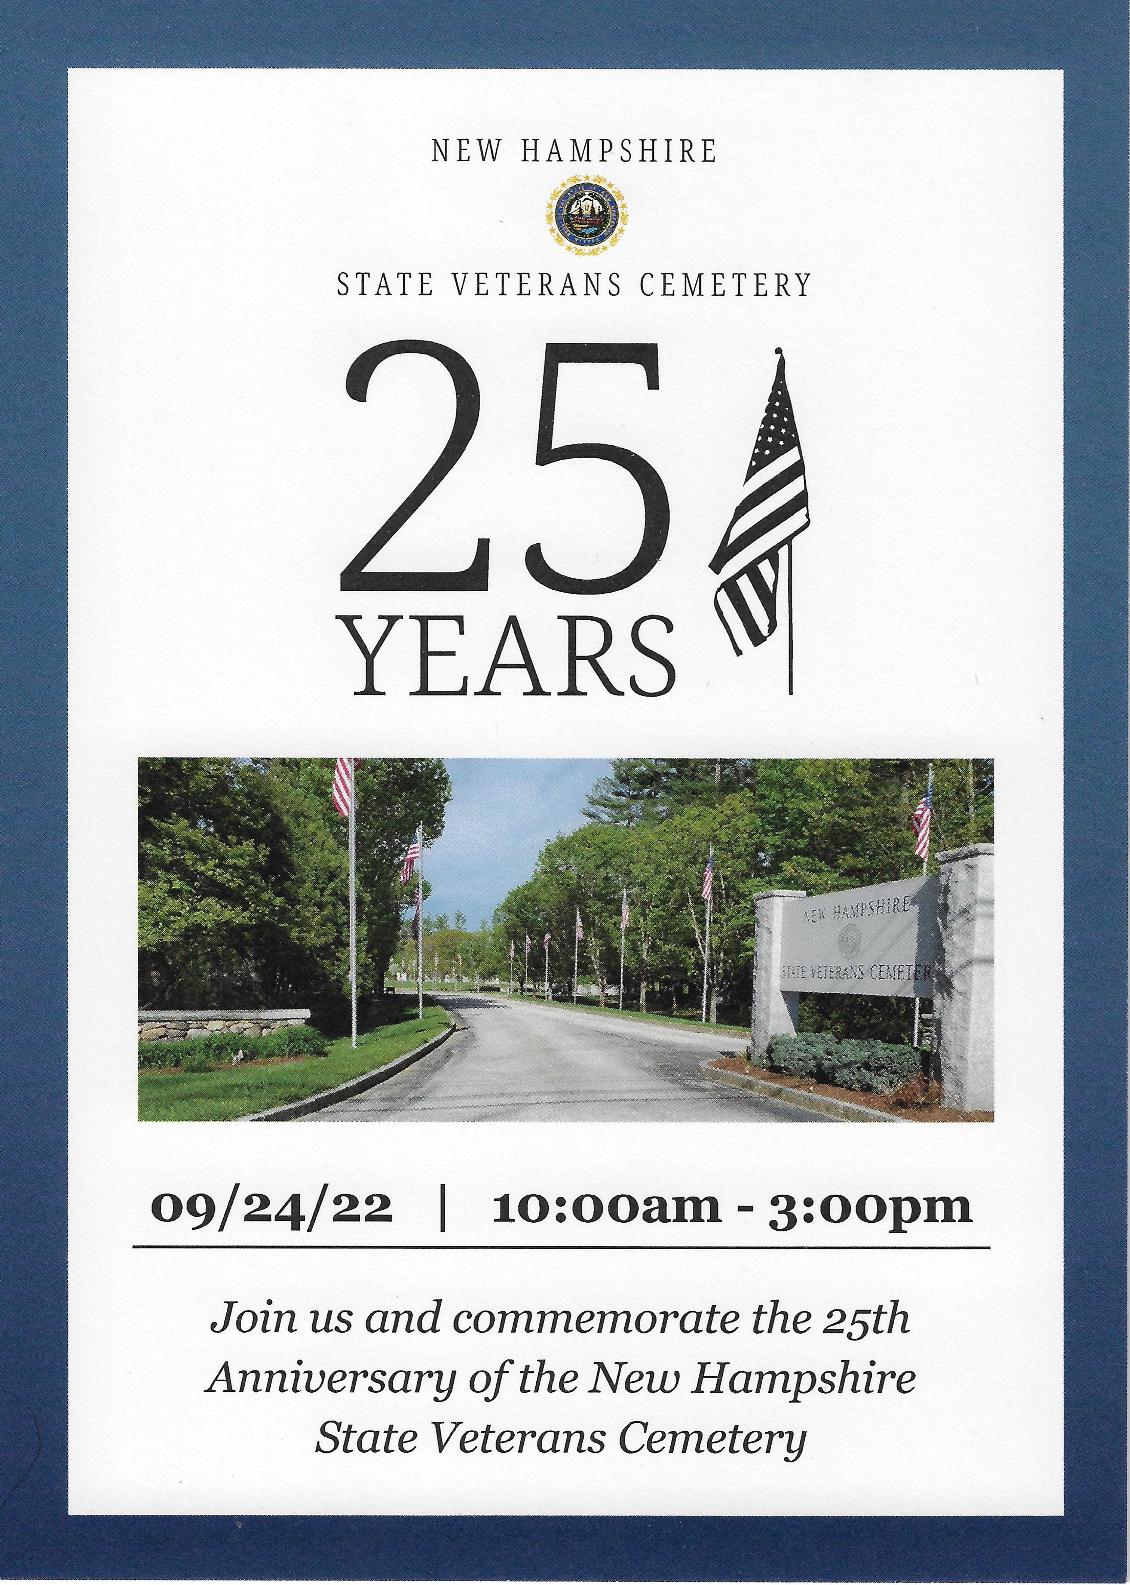 New Hampshire State Veterans Cemetery 25th Anniversary Invitation Cover